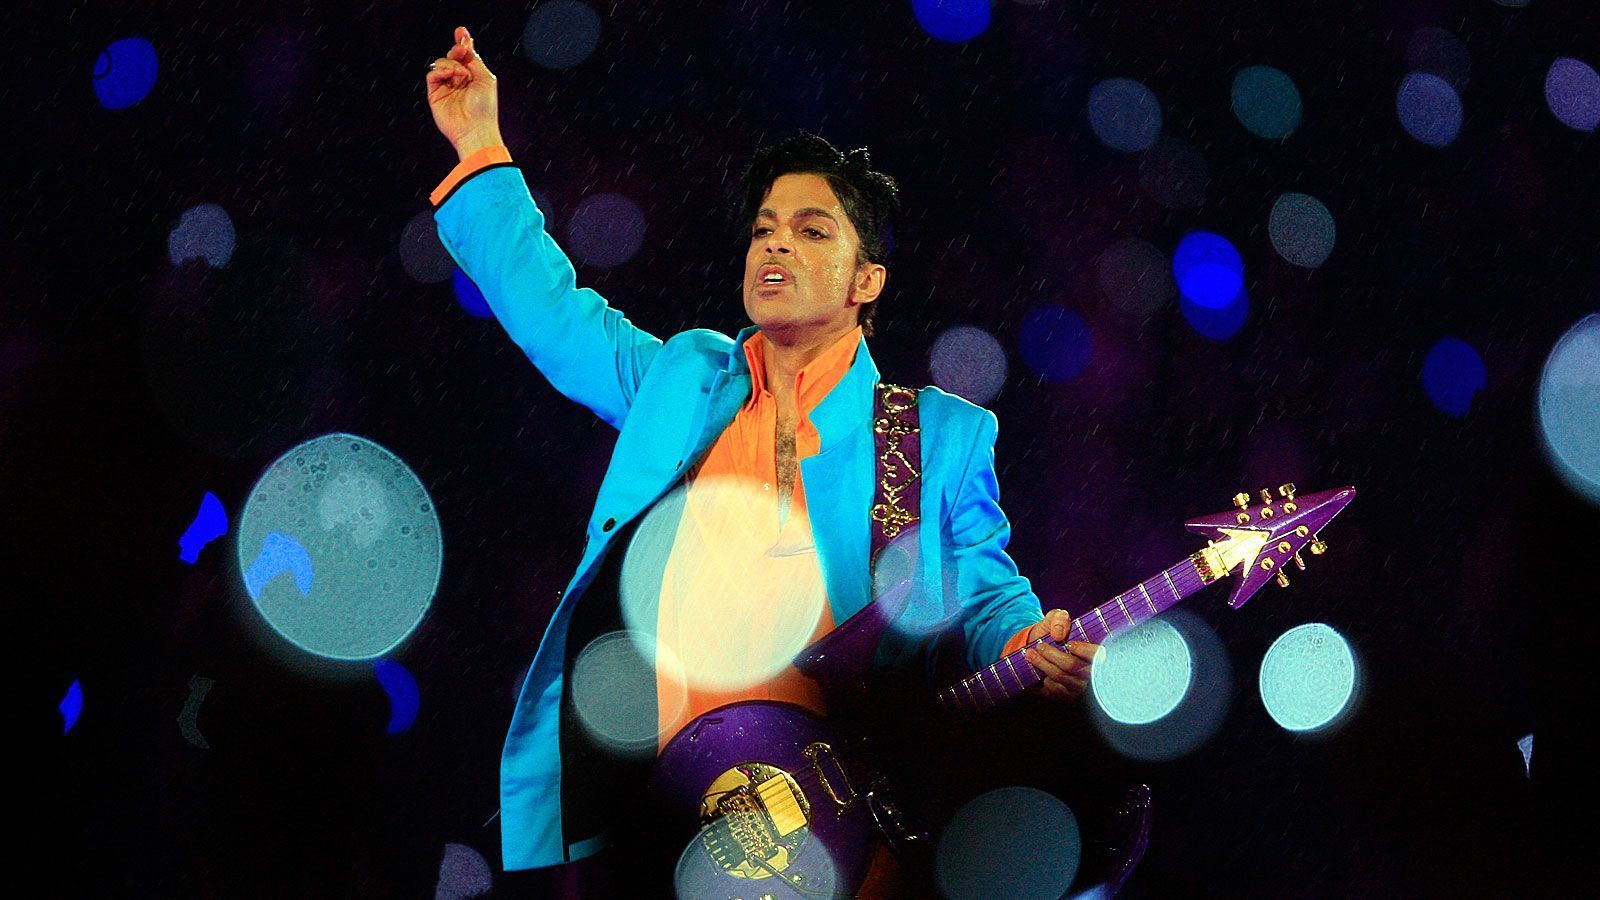 <strong>2007: Prince</strong><br>
                Der Auftritt von Prince beim Super Bowl im Jahr 2007 gilt als einer der besten überhaupt. Highlight der Show ist der Klassiker "Purple Rain", den Prince passenderweise im strömenden Regen anstimmt.
